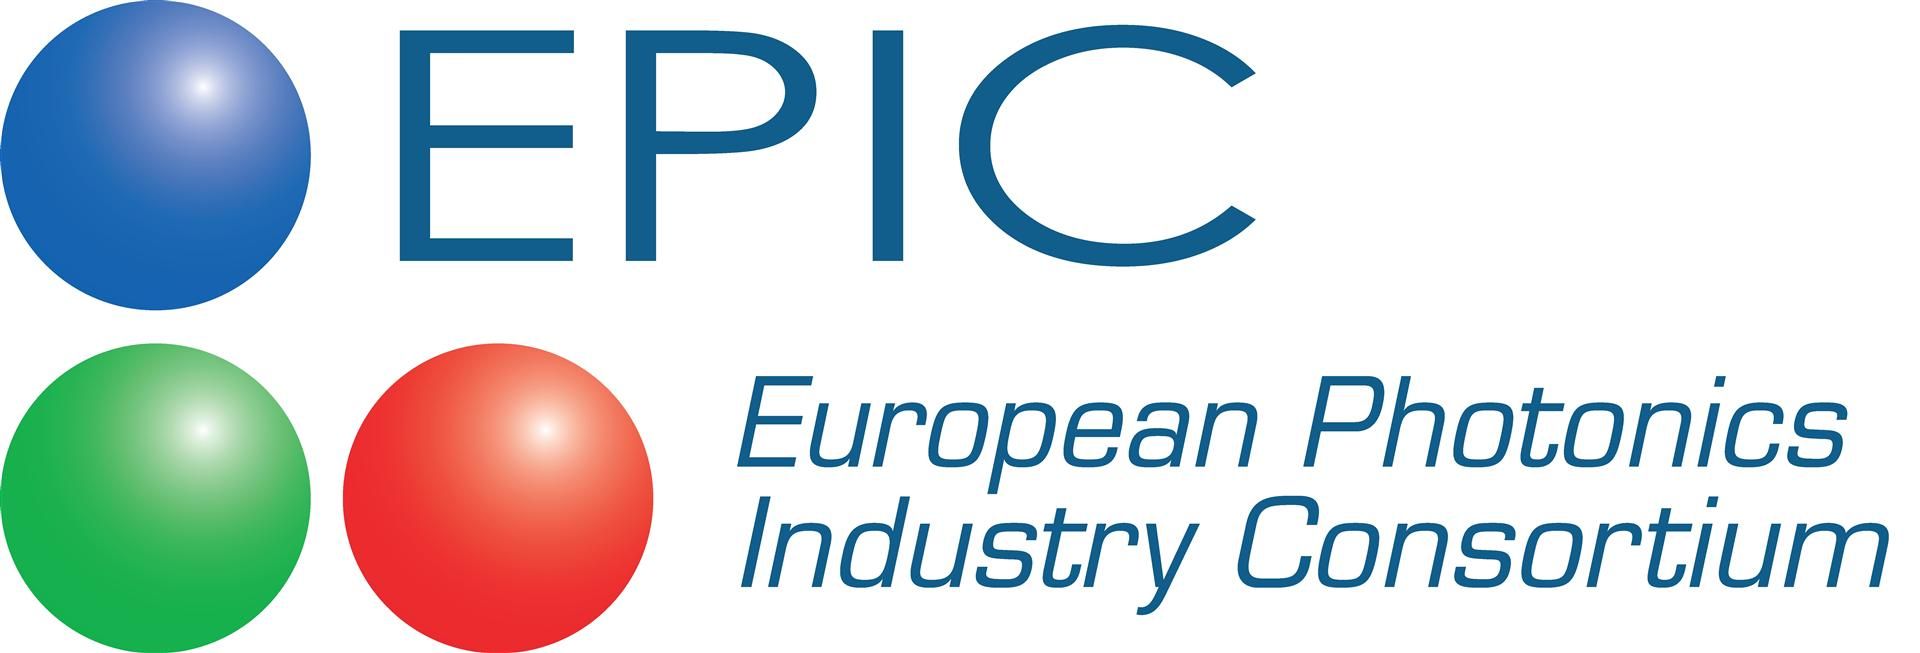 EPIC – European Photonics Industry Consortium